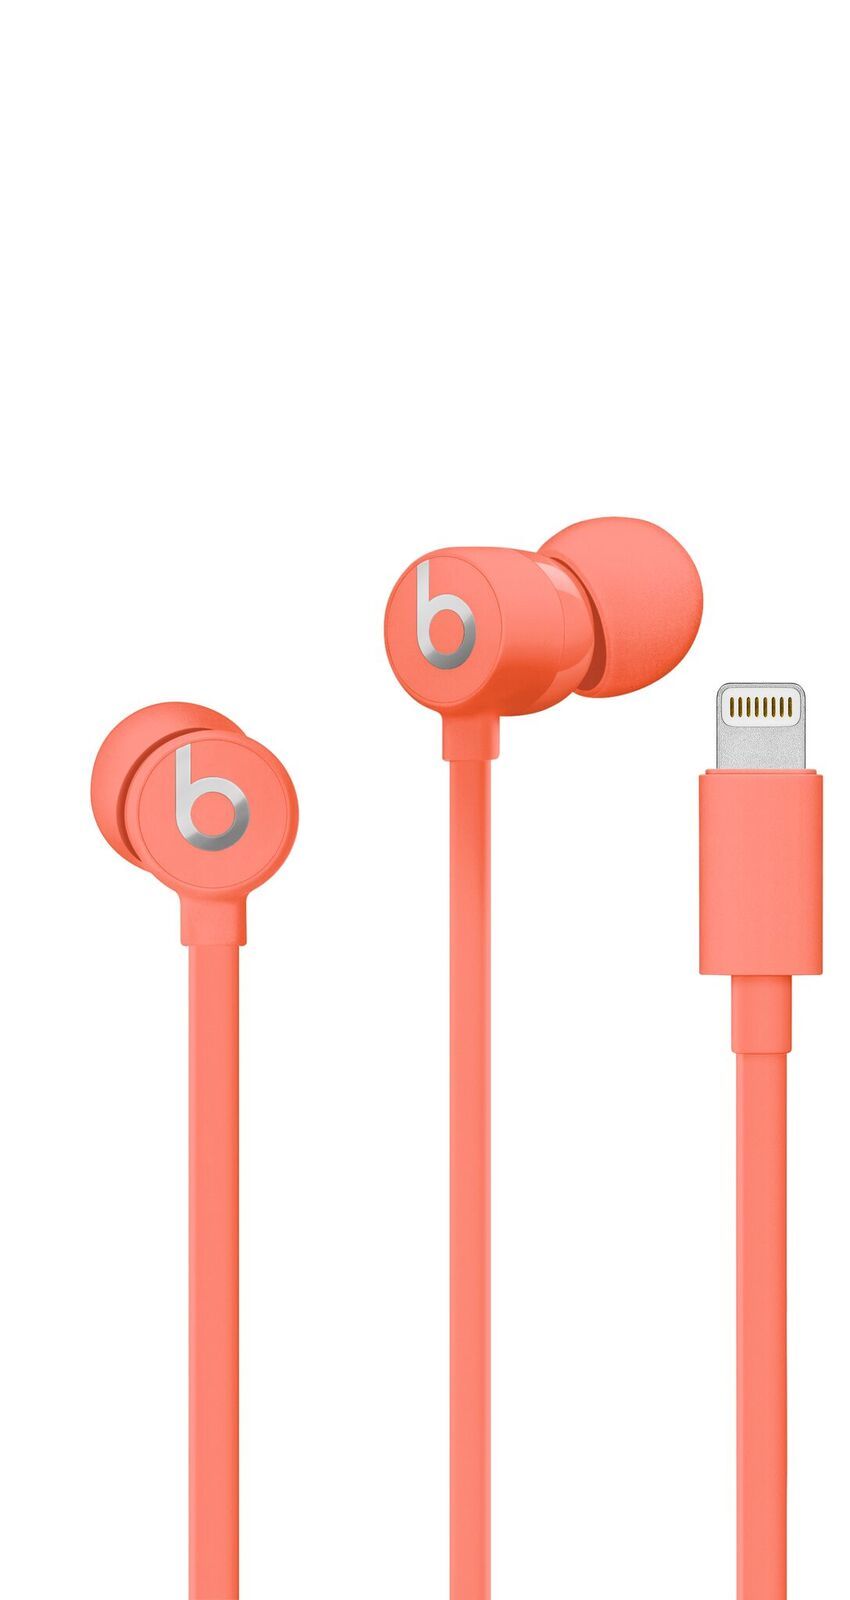 Beats image004 Keynote Apple : Beats suit également avec une nouvelle collection Apple